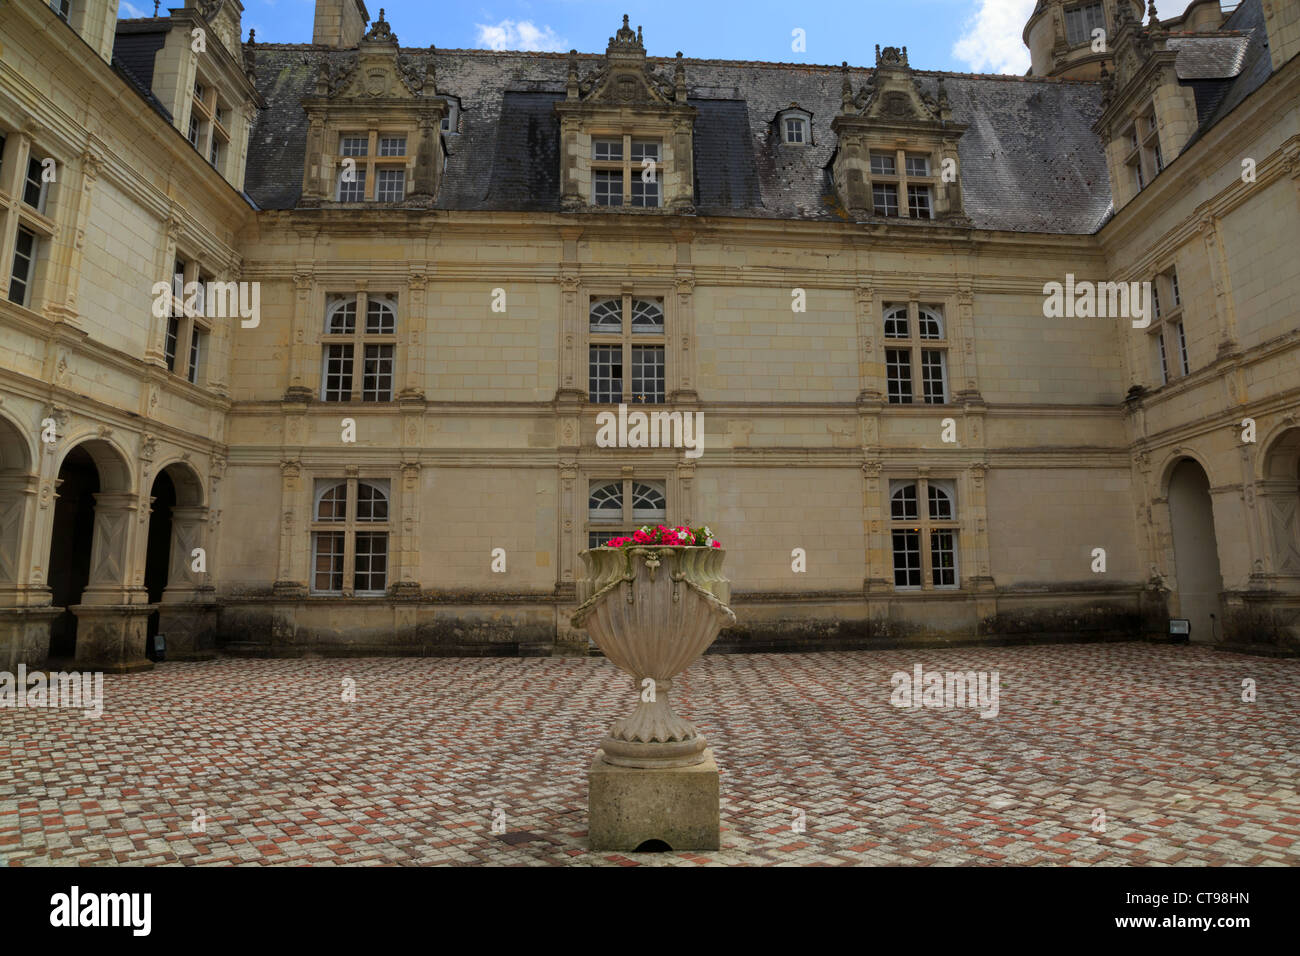 Chateau de Villandry, Loire Valley, France. Stock Photo